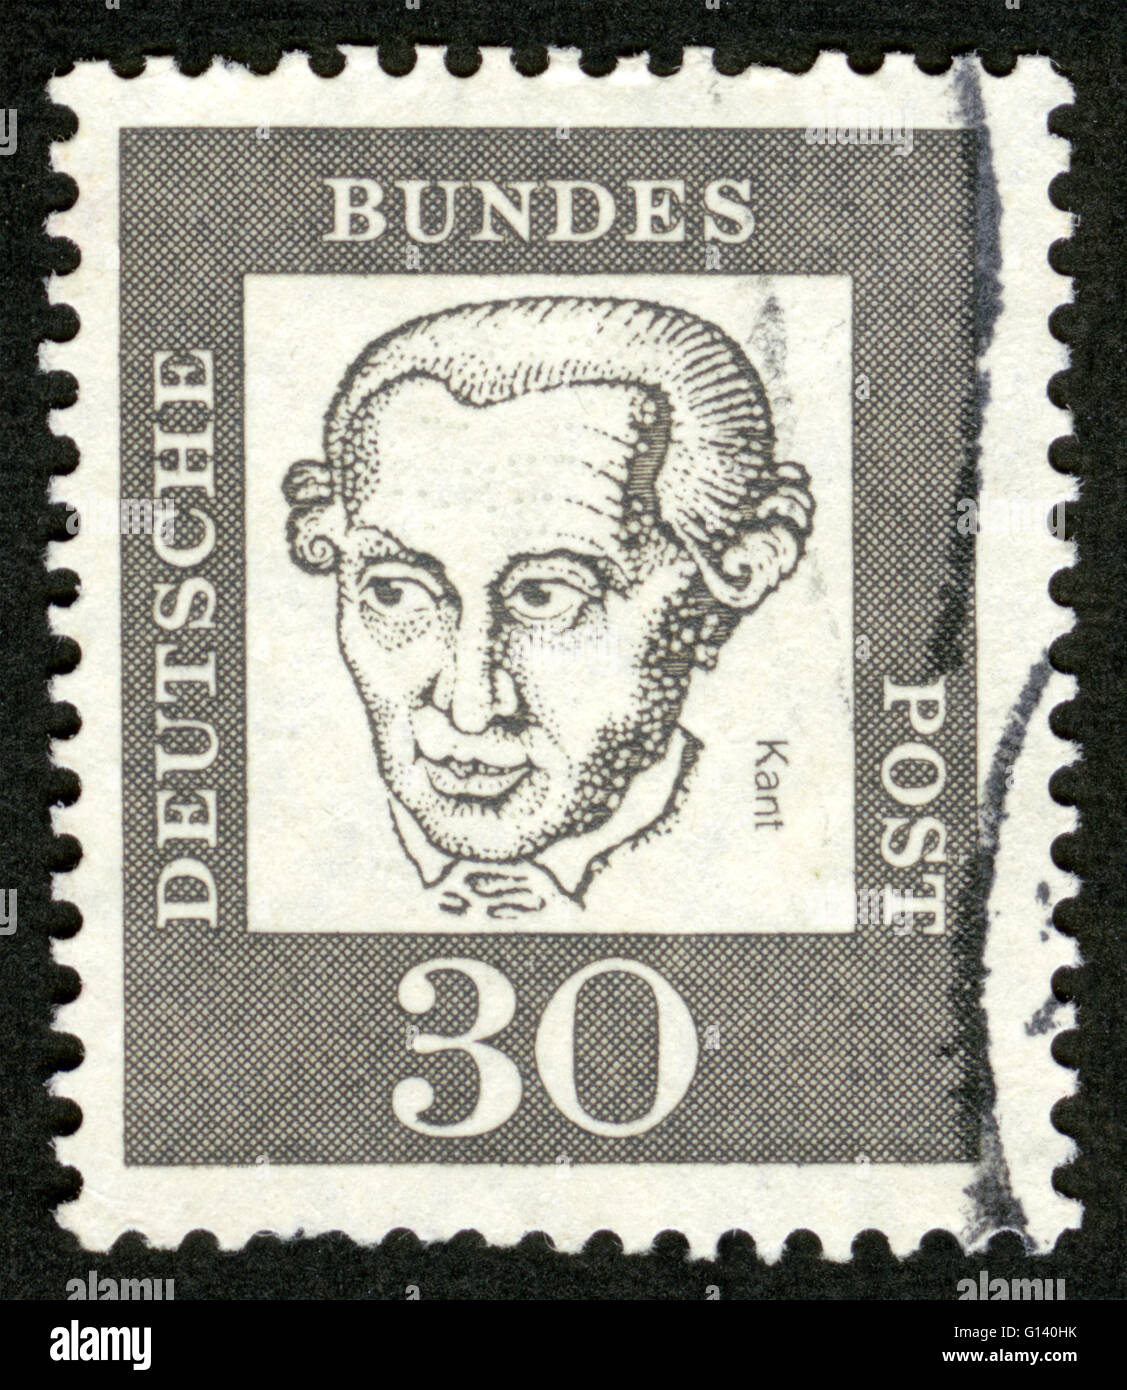 Emmanuel Kant (1724-1804), philosophe allemand, fondateur de la philosophie classique allemande, sur timbre Allemand Banque D'Images